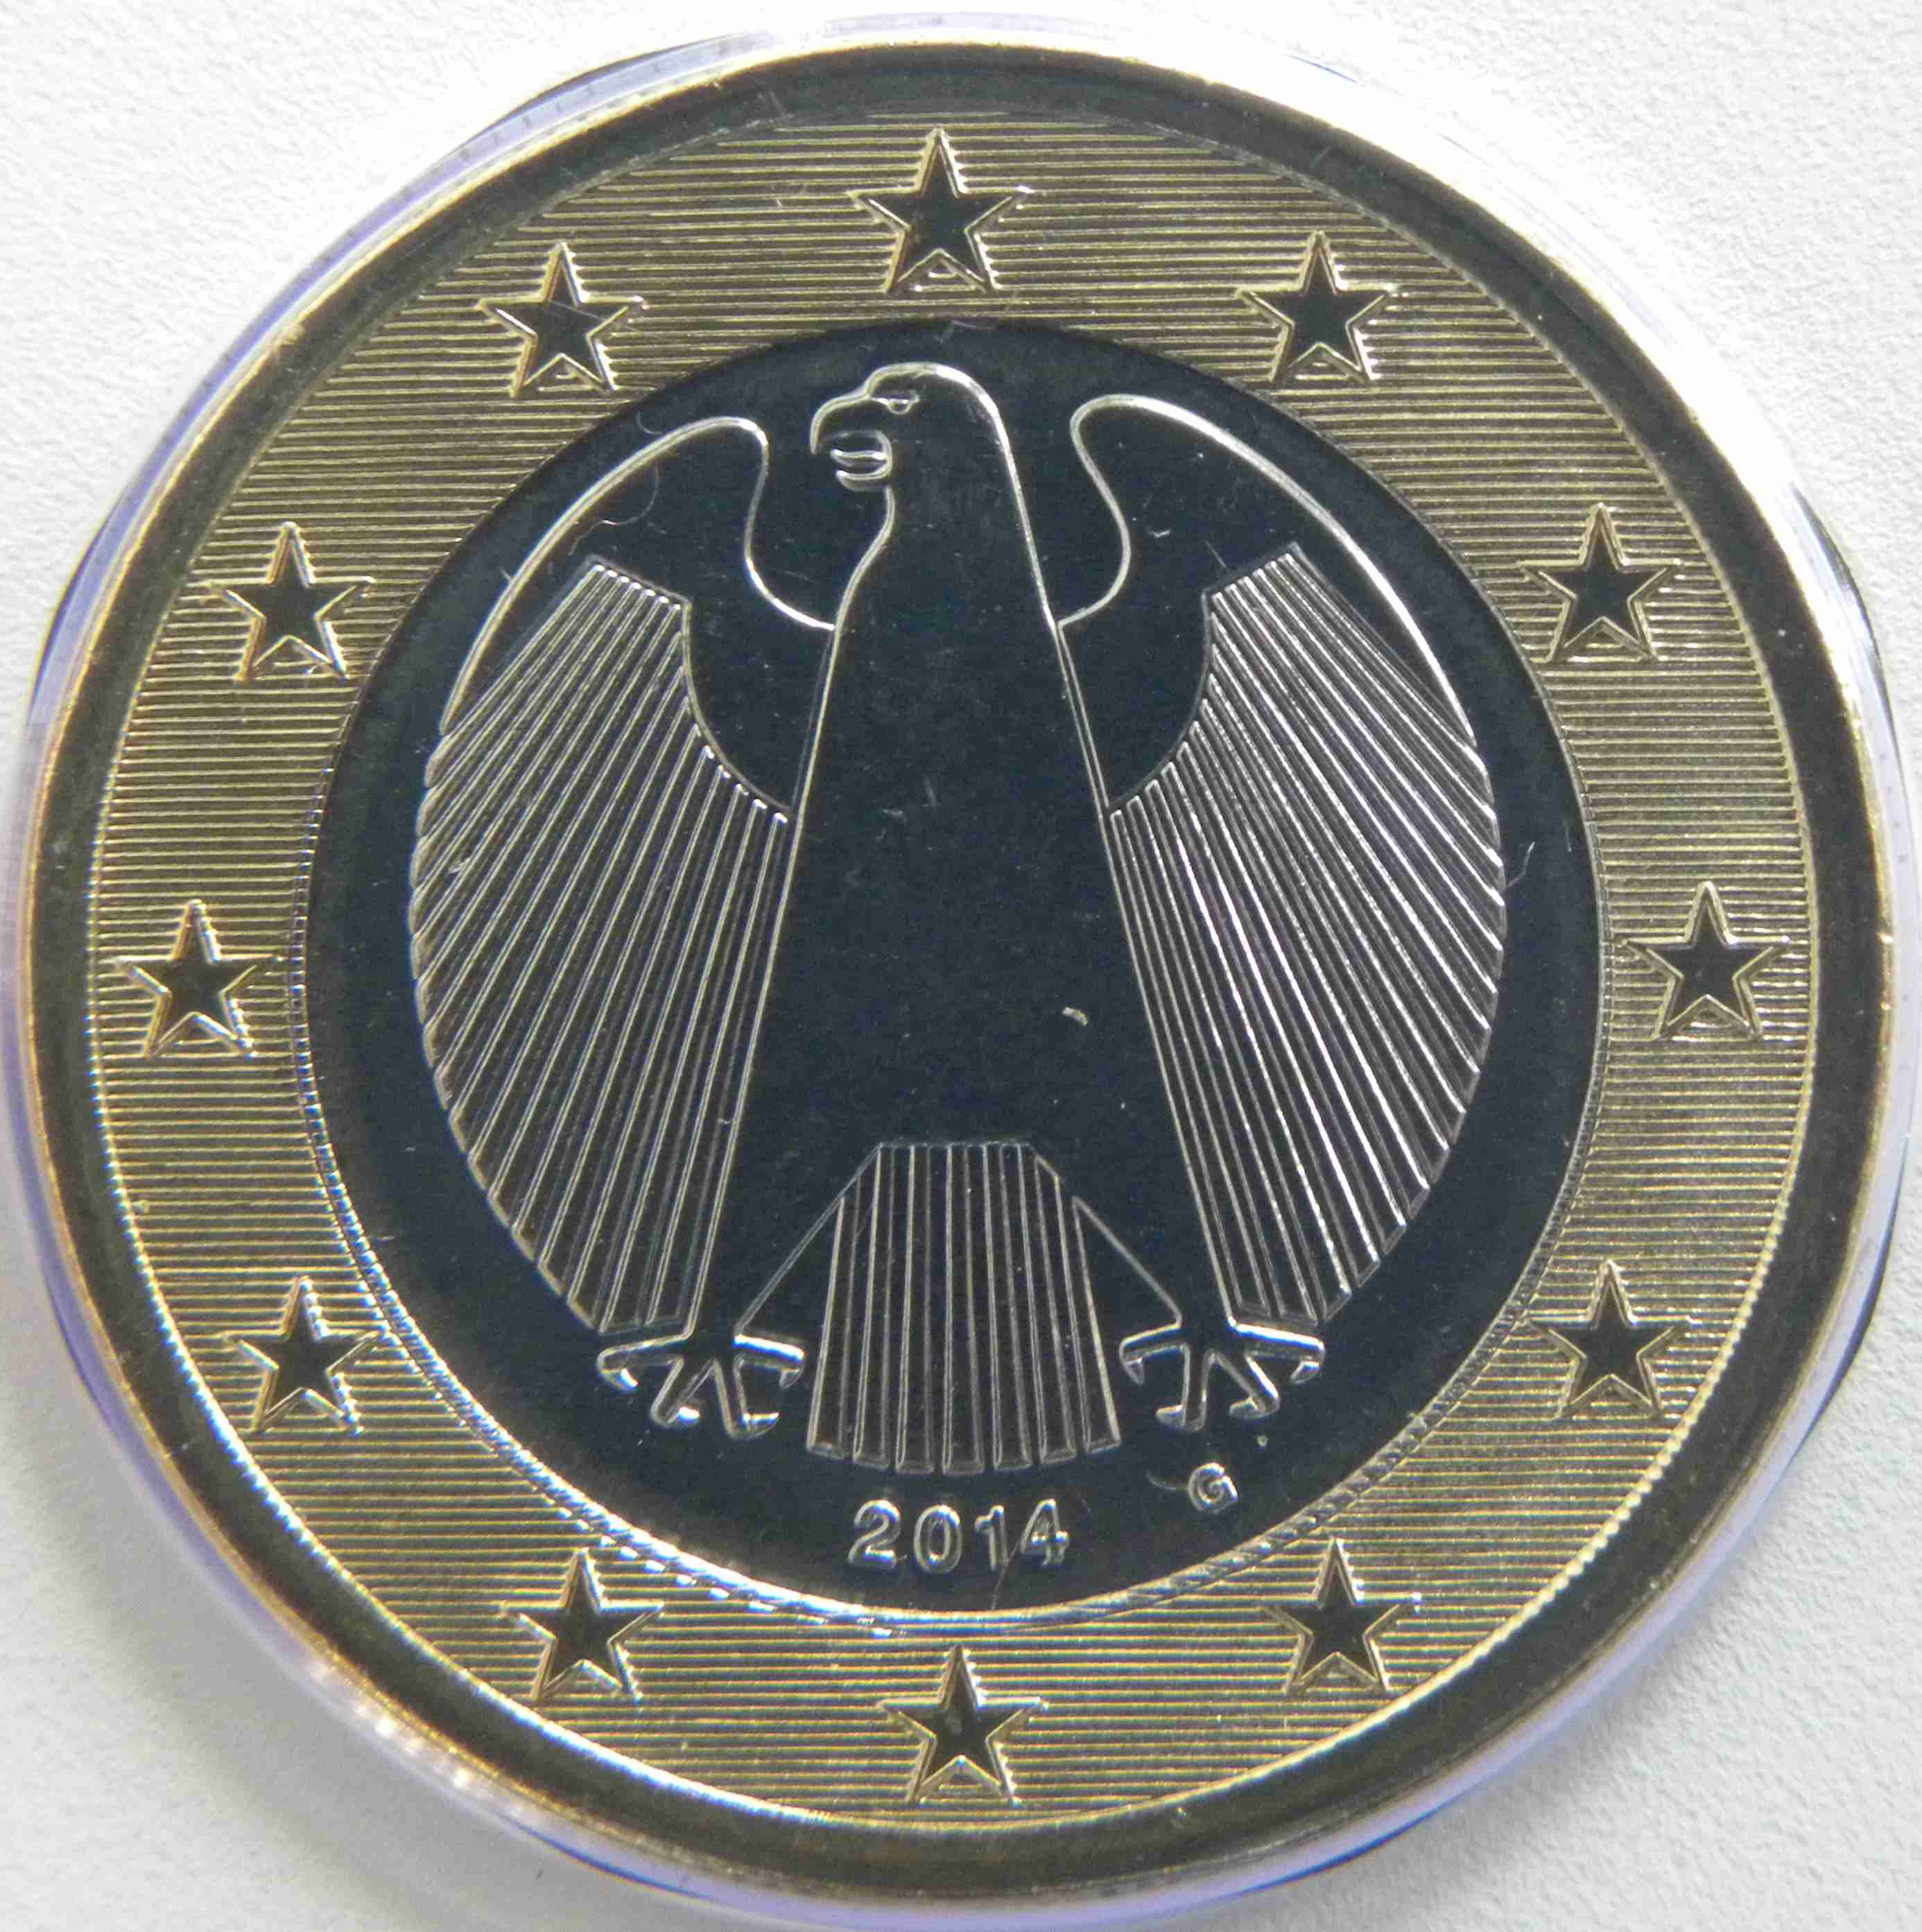 Allemagne 1 Euro 2014 G - pieces-euro.tv - Le catalogue des monnaies en ligne